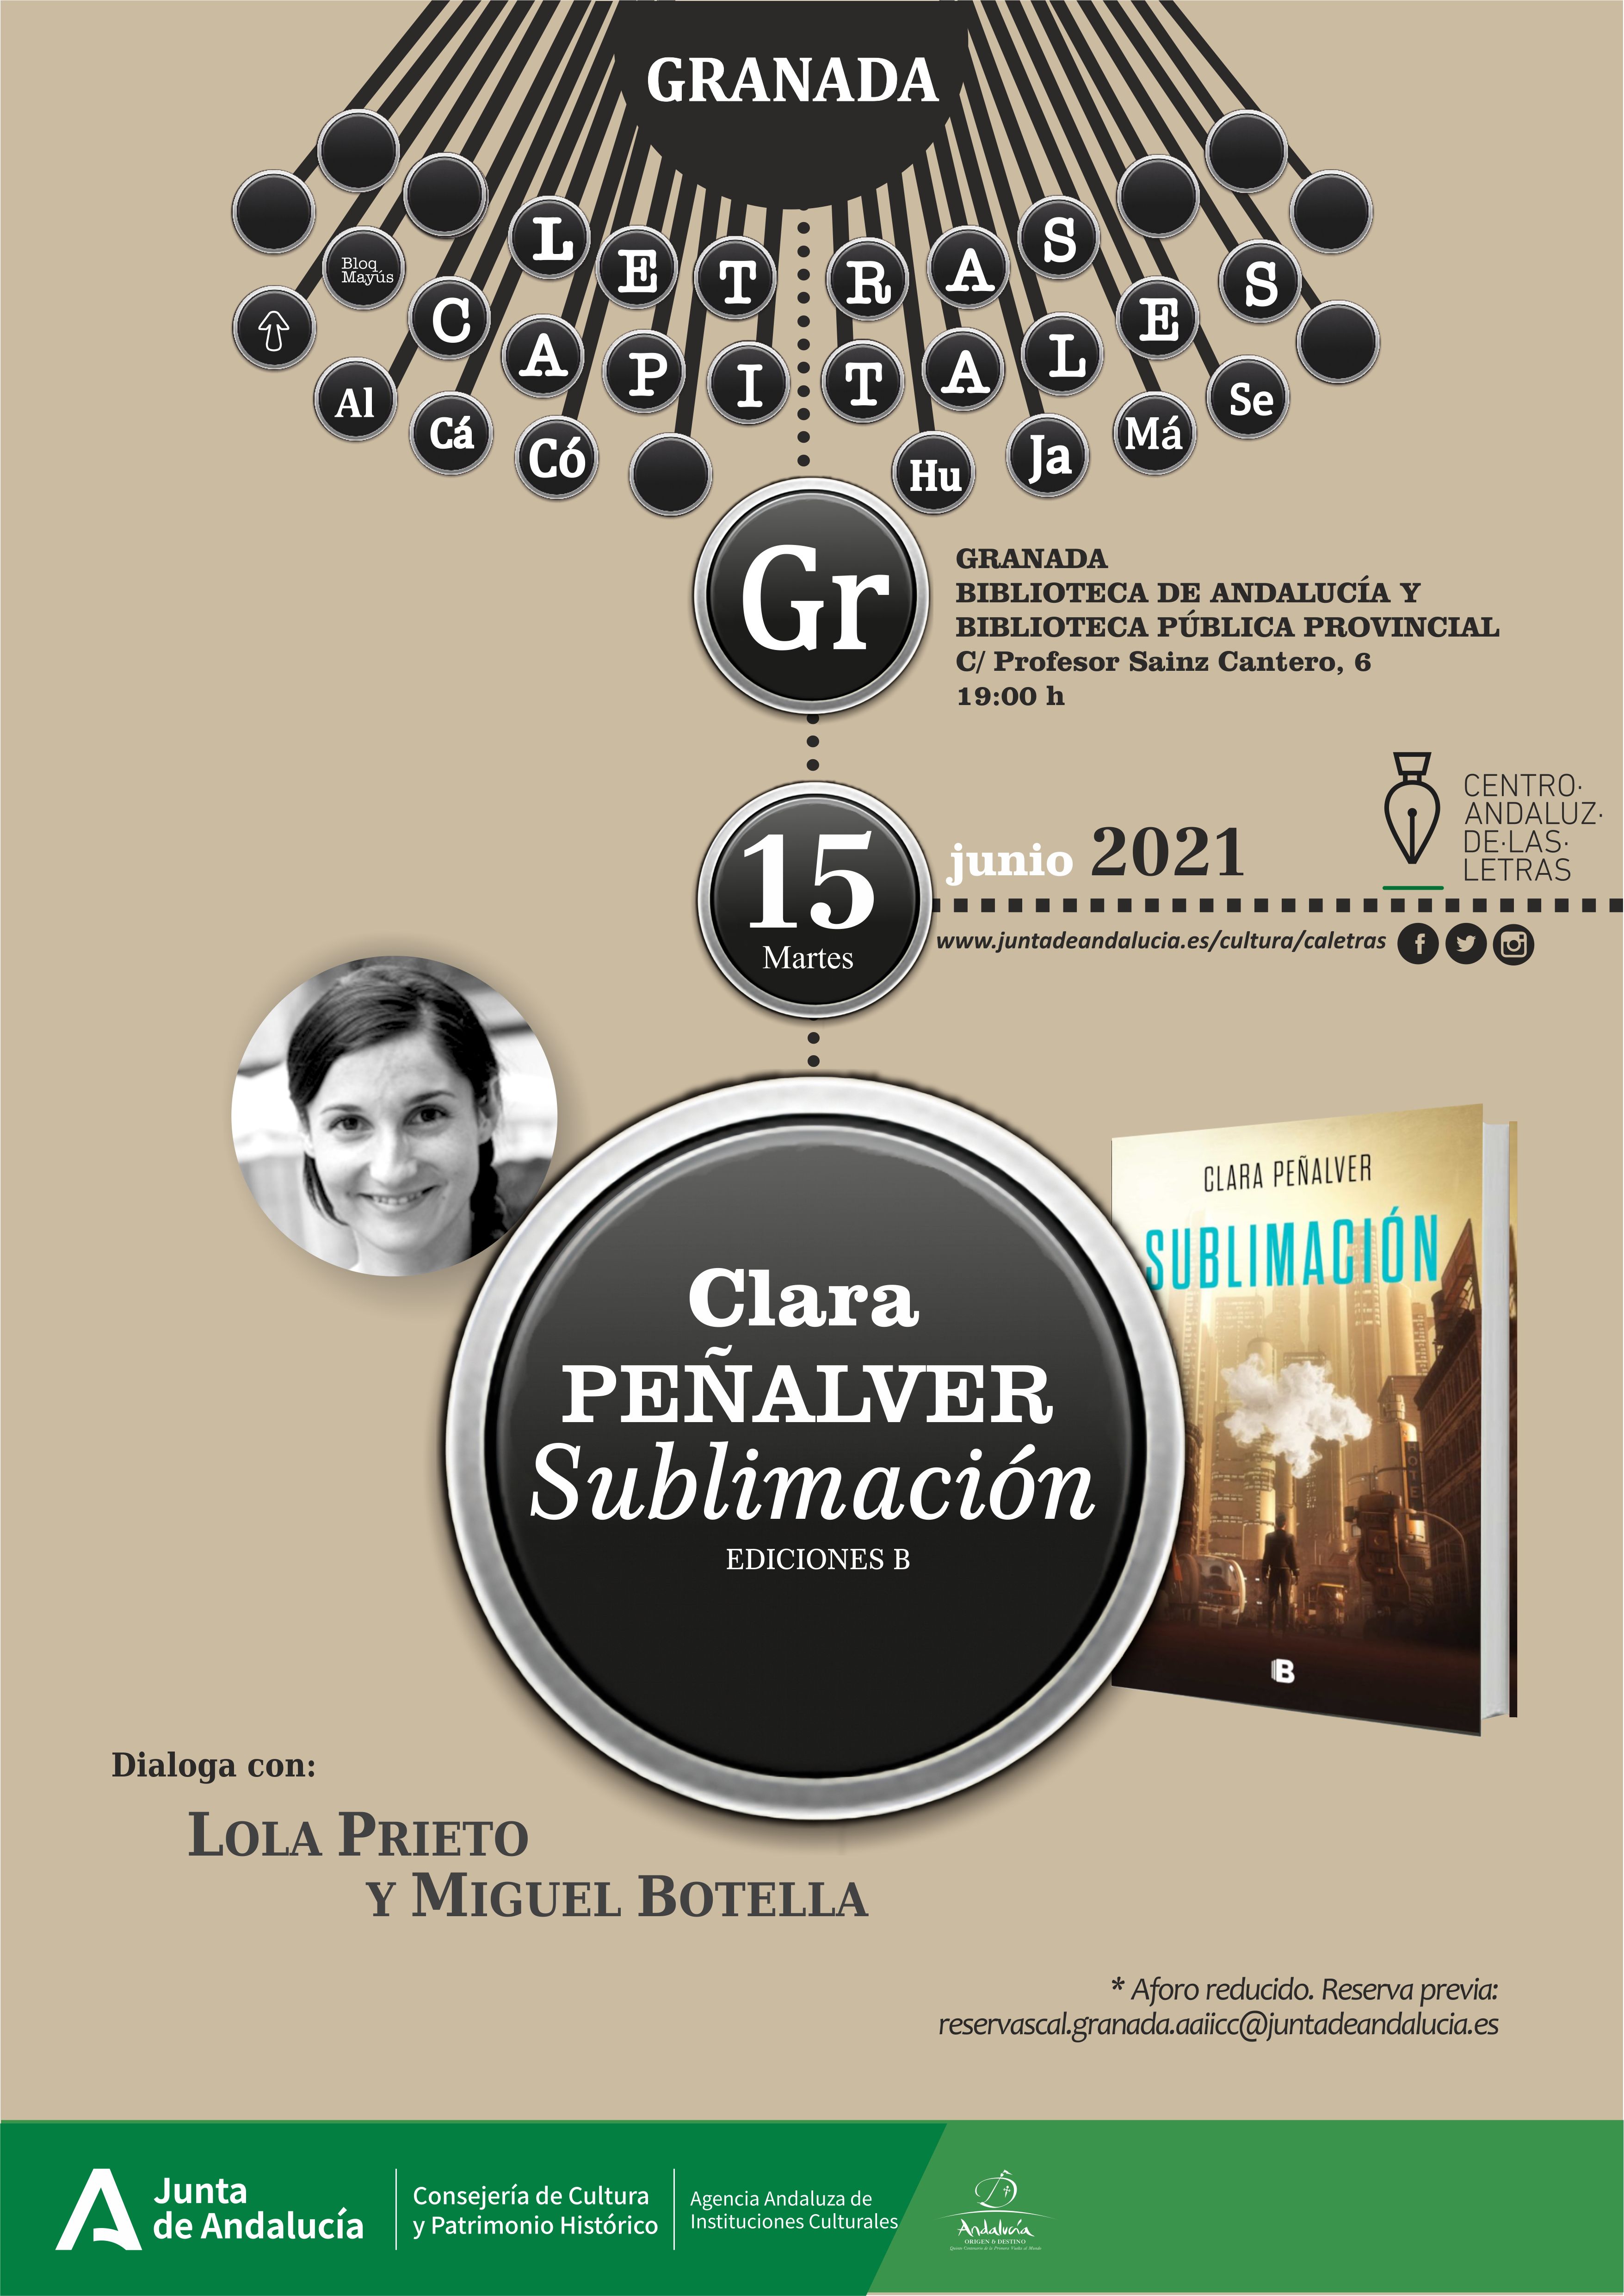 El Centro Andaluz de las Letras presenta el libro ‘Sublimación’ de la escritora Clara Peñalver